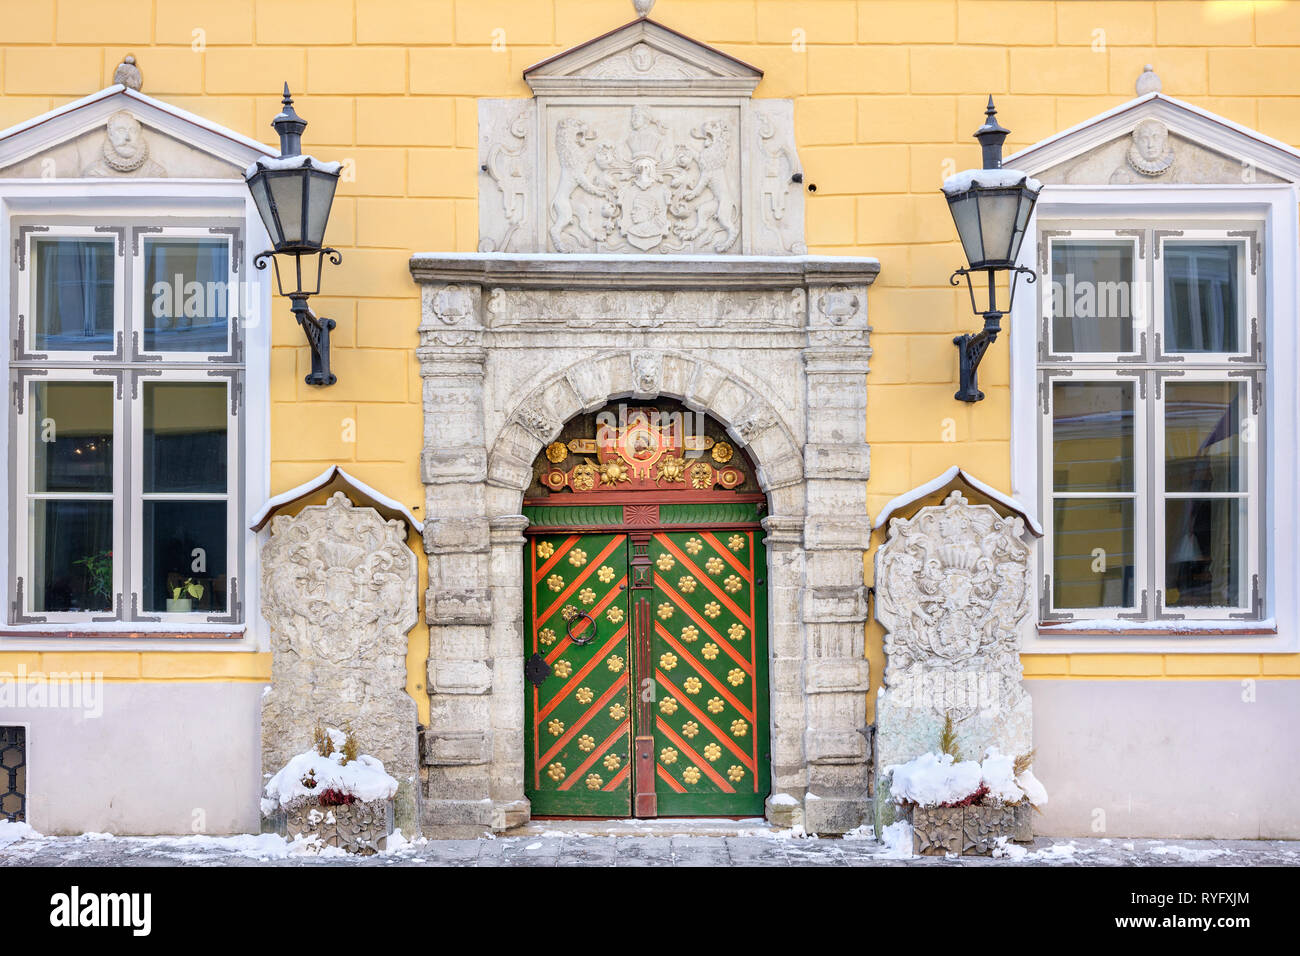 Eingang Blackheads brotherhood Haus in der Altstadt von Tallinn. Estland, EU Stockfoto